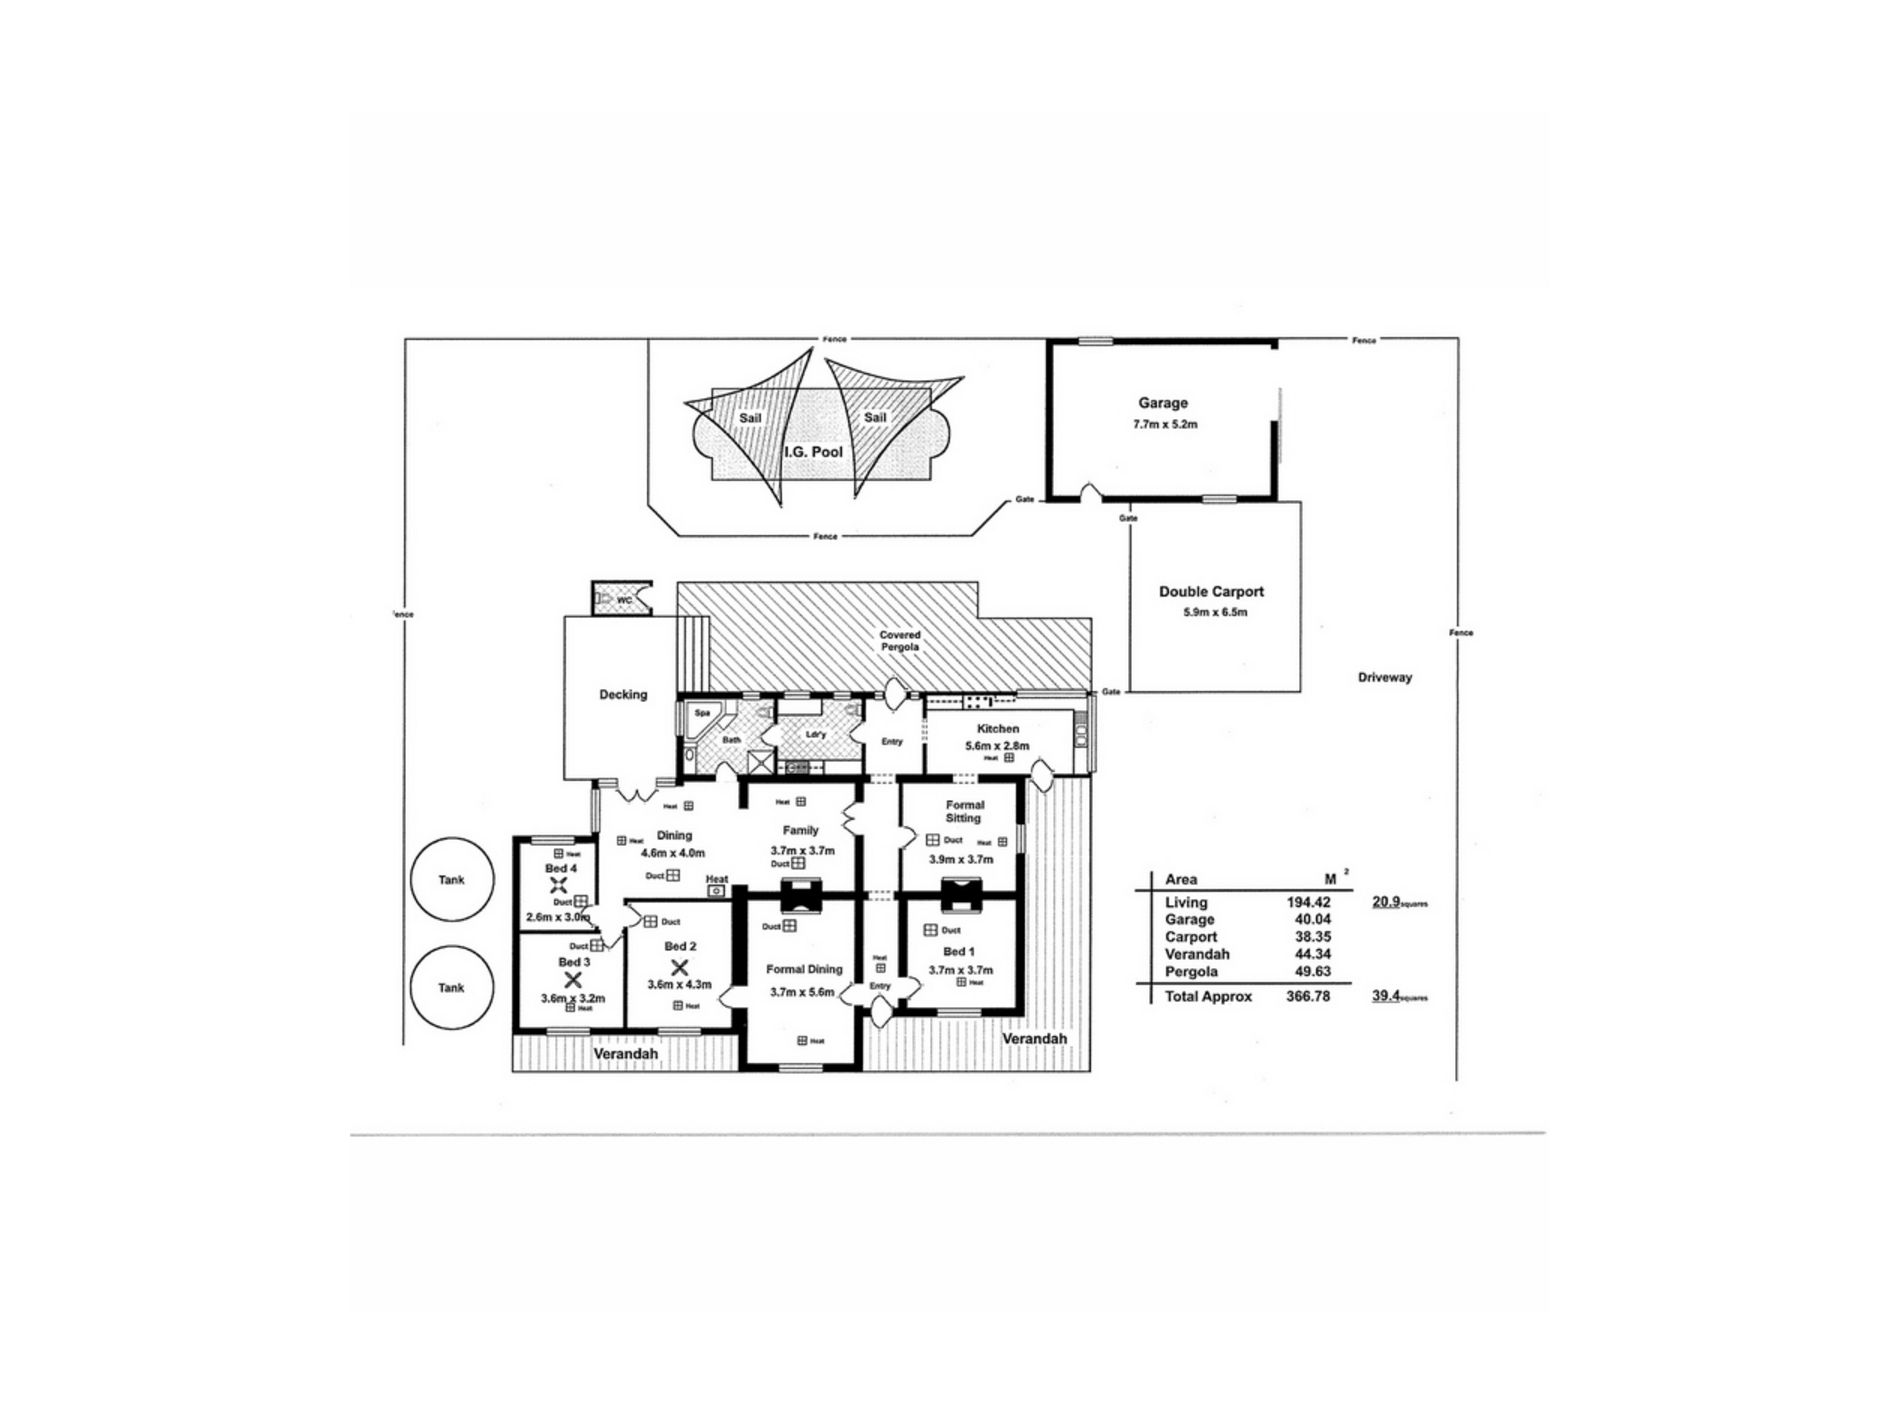 2451 Kersbrook Road, Kersbrook Floor Plan